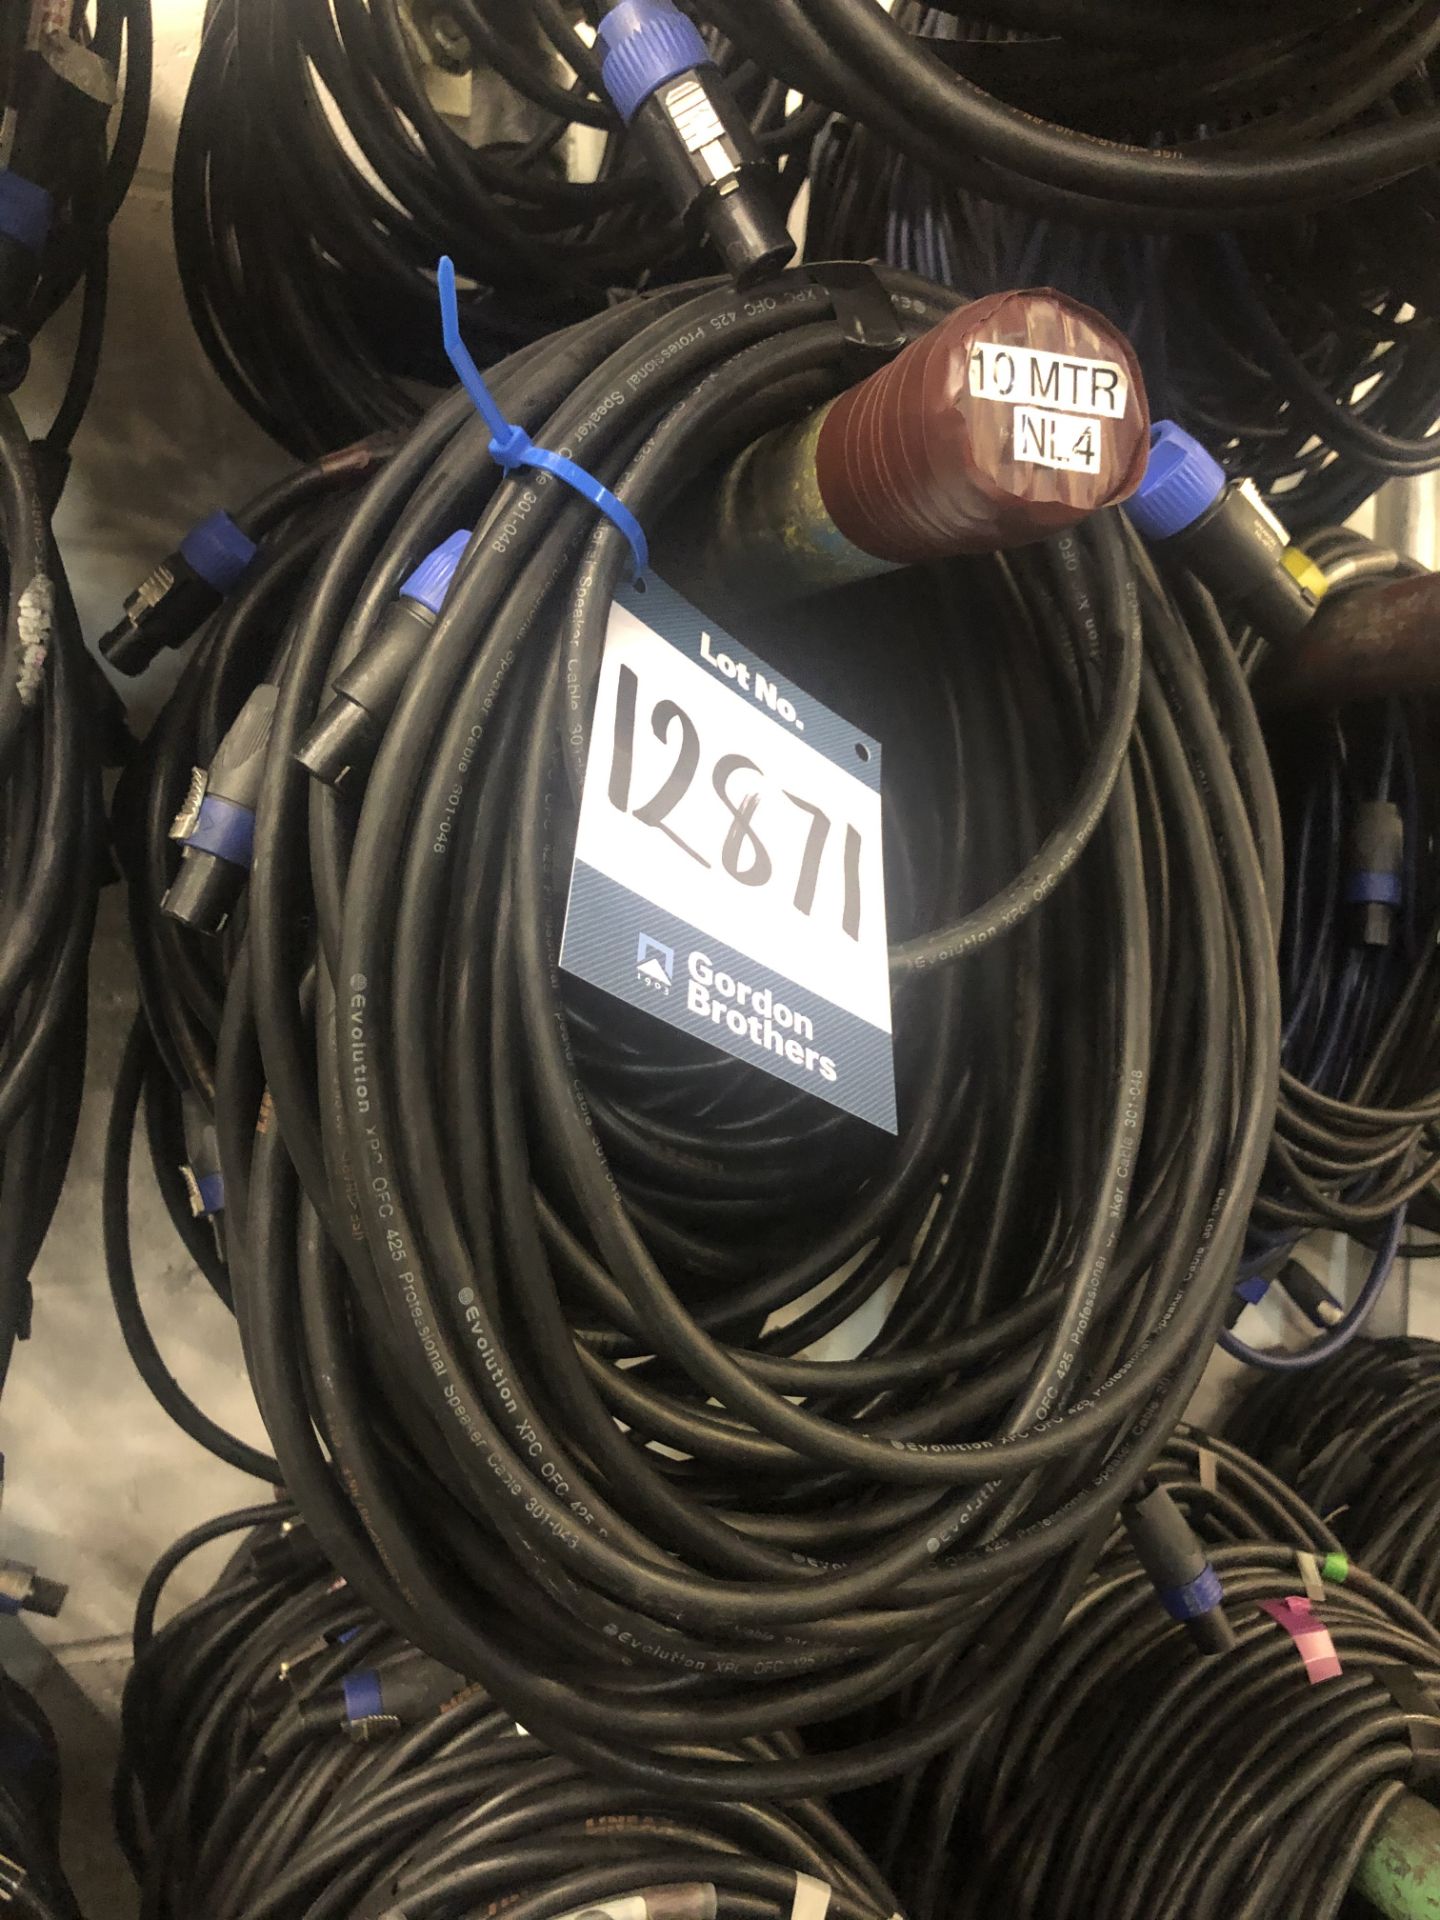 11x No. 10m NL4 cables